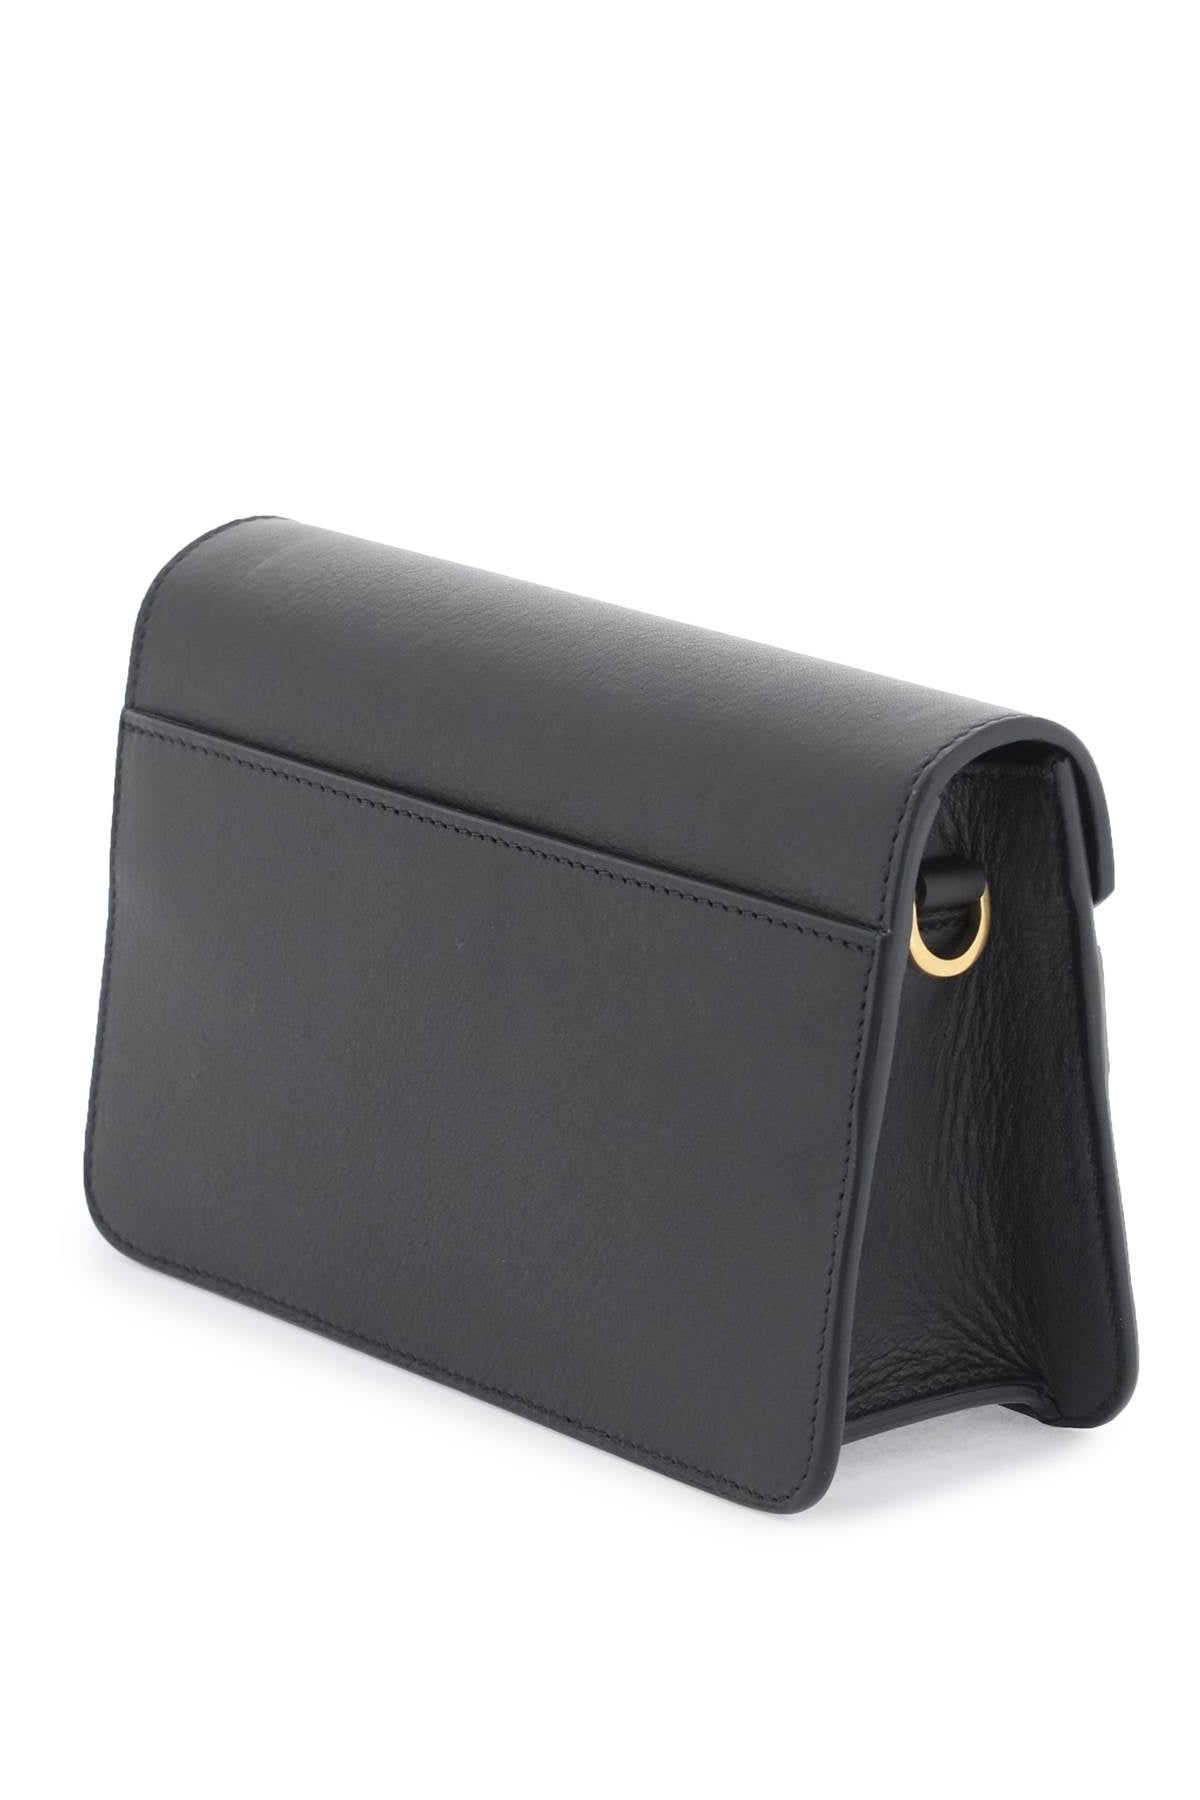 BALLY Designer Grained Leather Crossbody Handbag for Women in Black